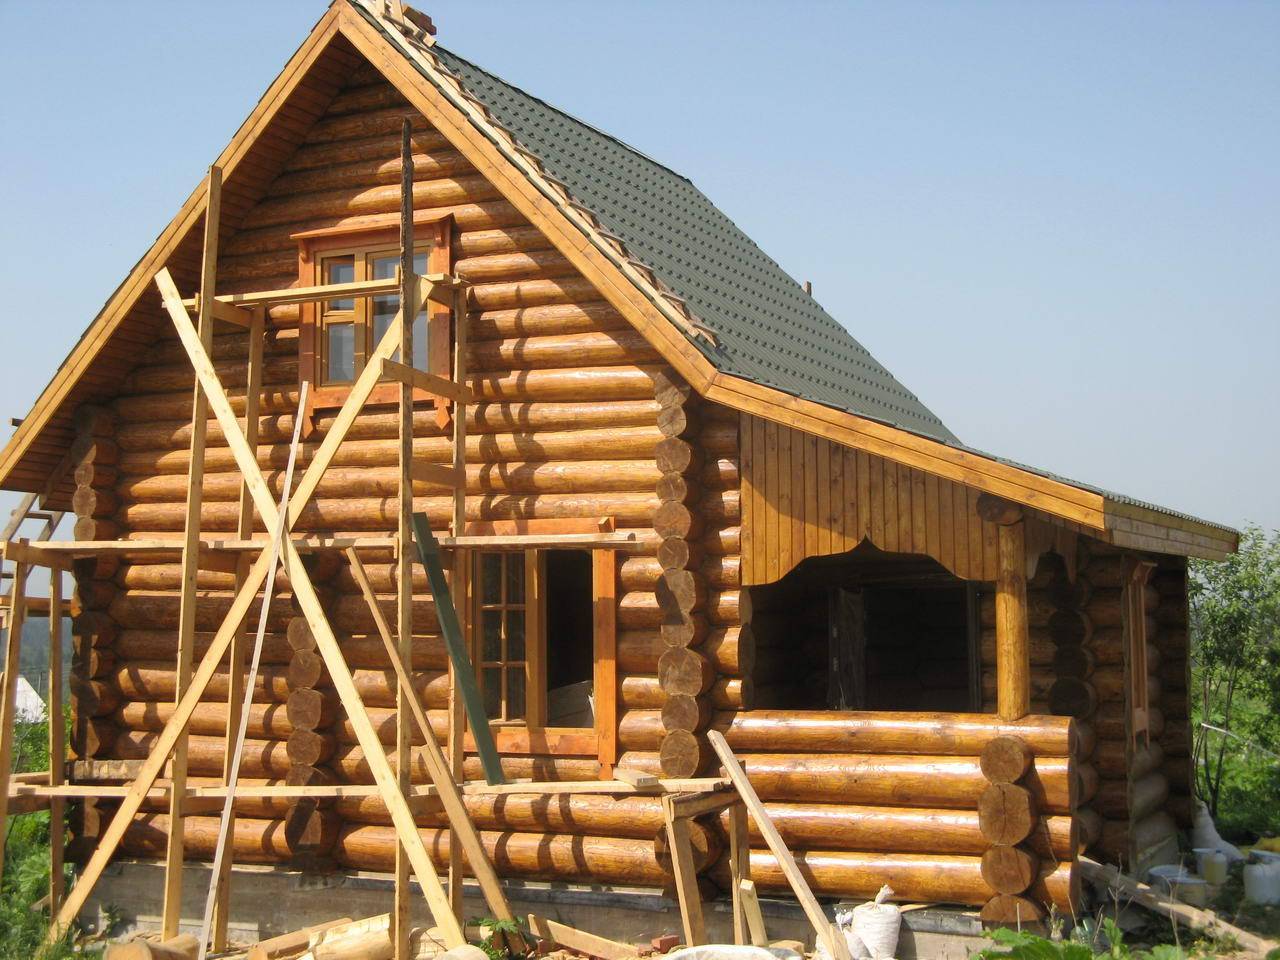 Дома из сруба — обзор достойных проектов (90 фото). готовые проекты деревянных домов смотрите здесь!